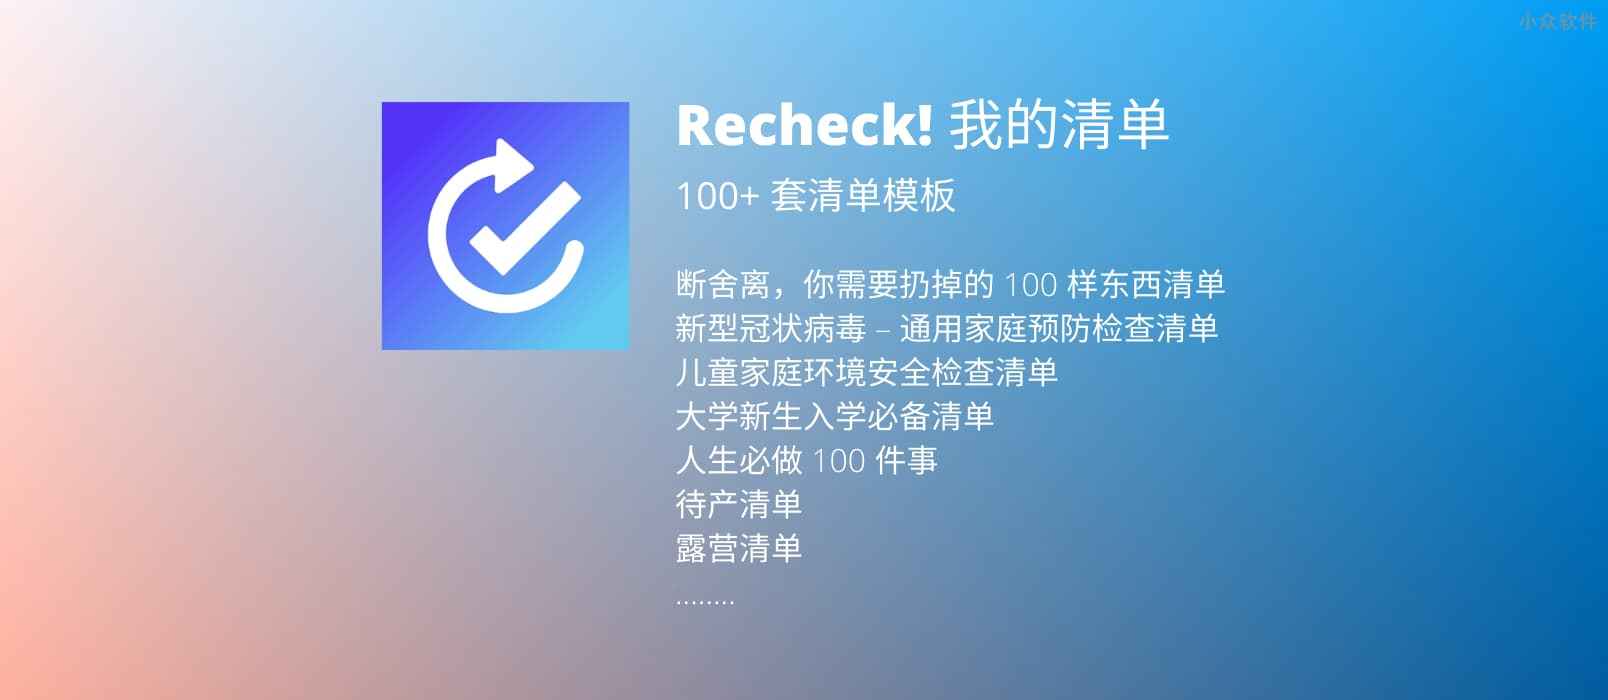 Recheck! 我的清单 – 自带 100+ 套模板的清单应用[iPhone/iPad/Apple Watch]